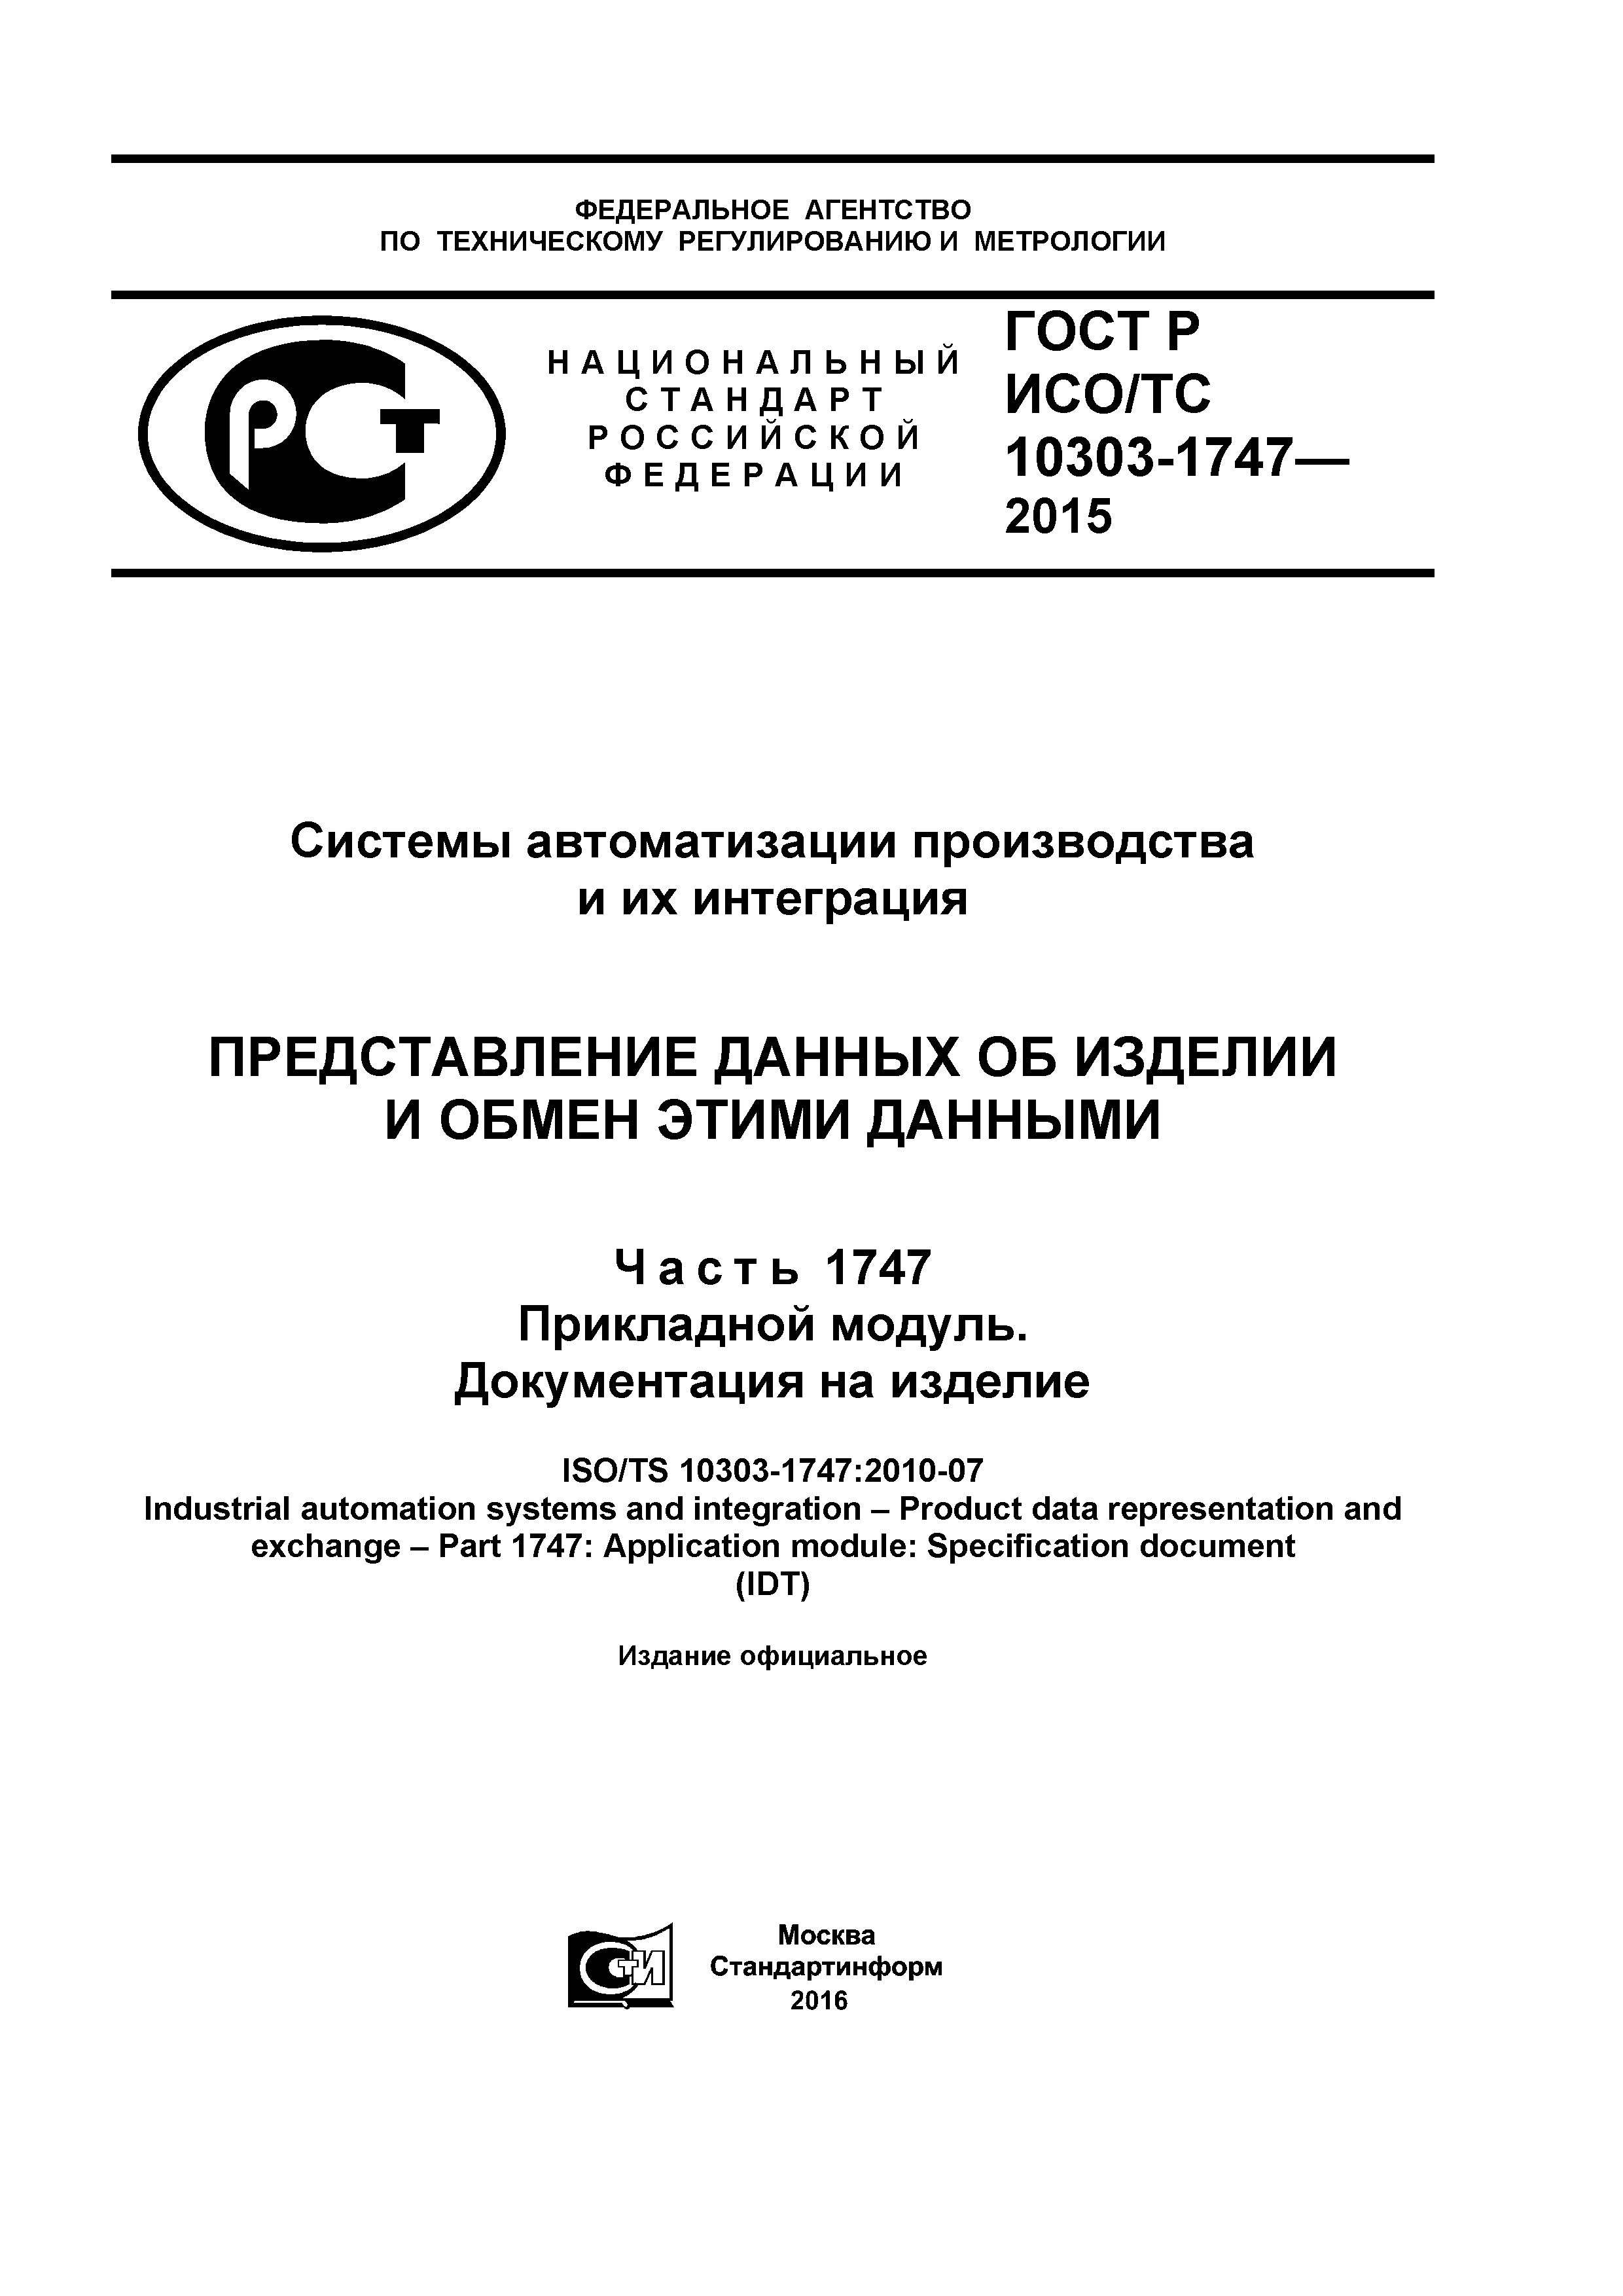 ГОСТ Р ИСО/ТС 10303-1747-2015